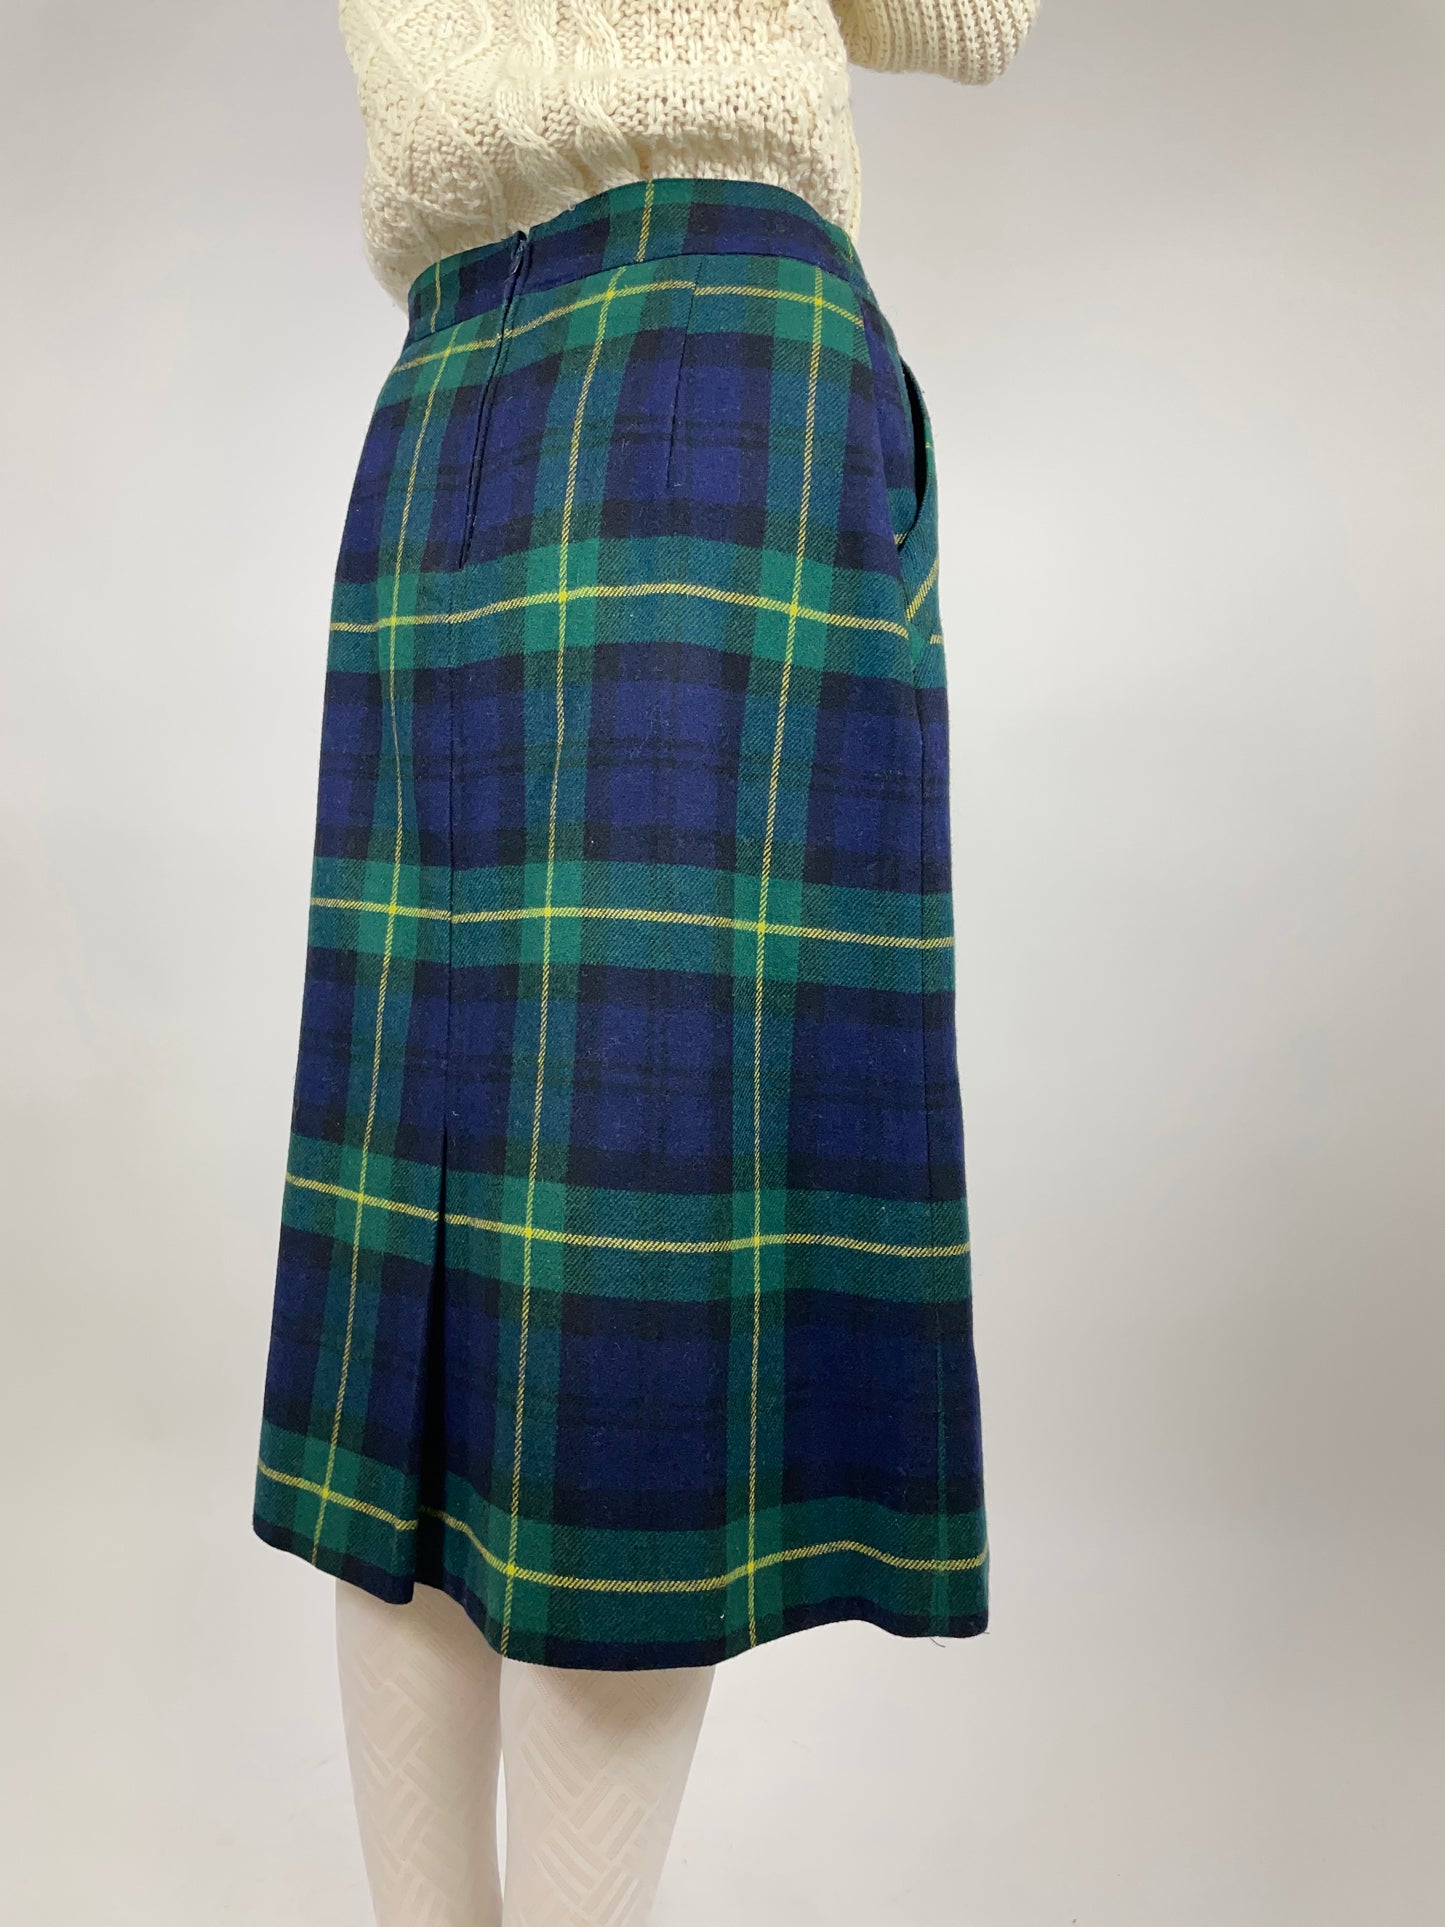 Tartan wool skirt